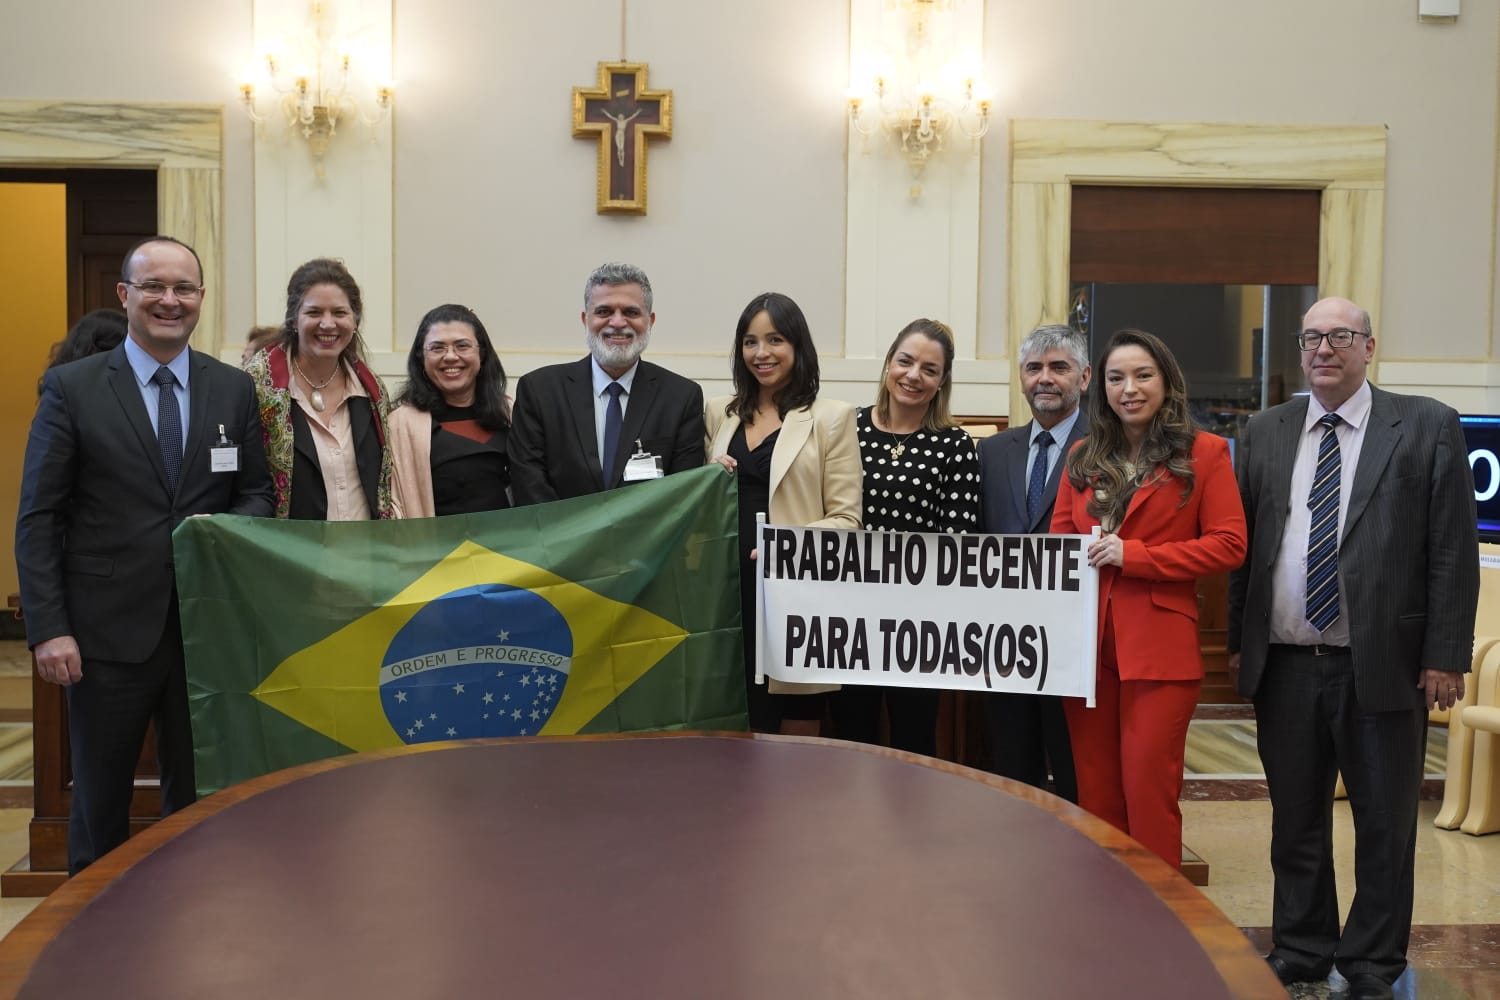 Juízes e juízas brasileiros e presidente do TST em encontro no Vaticano.